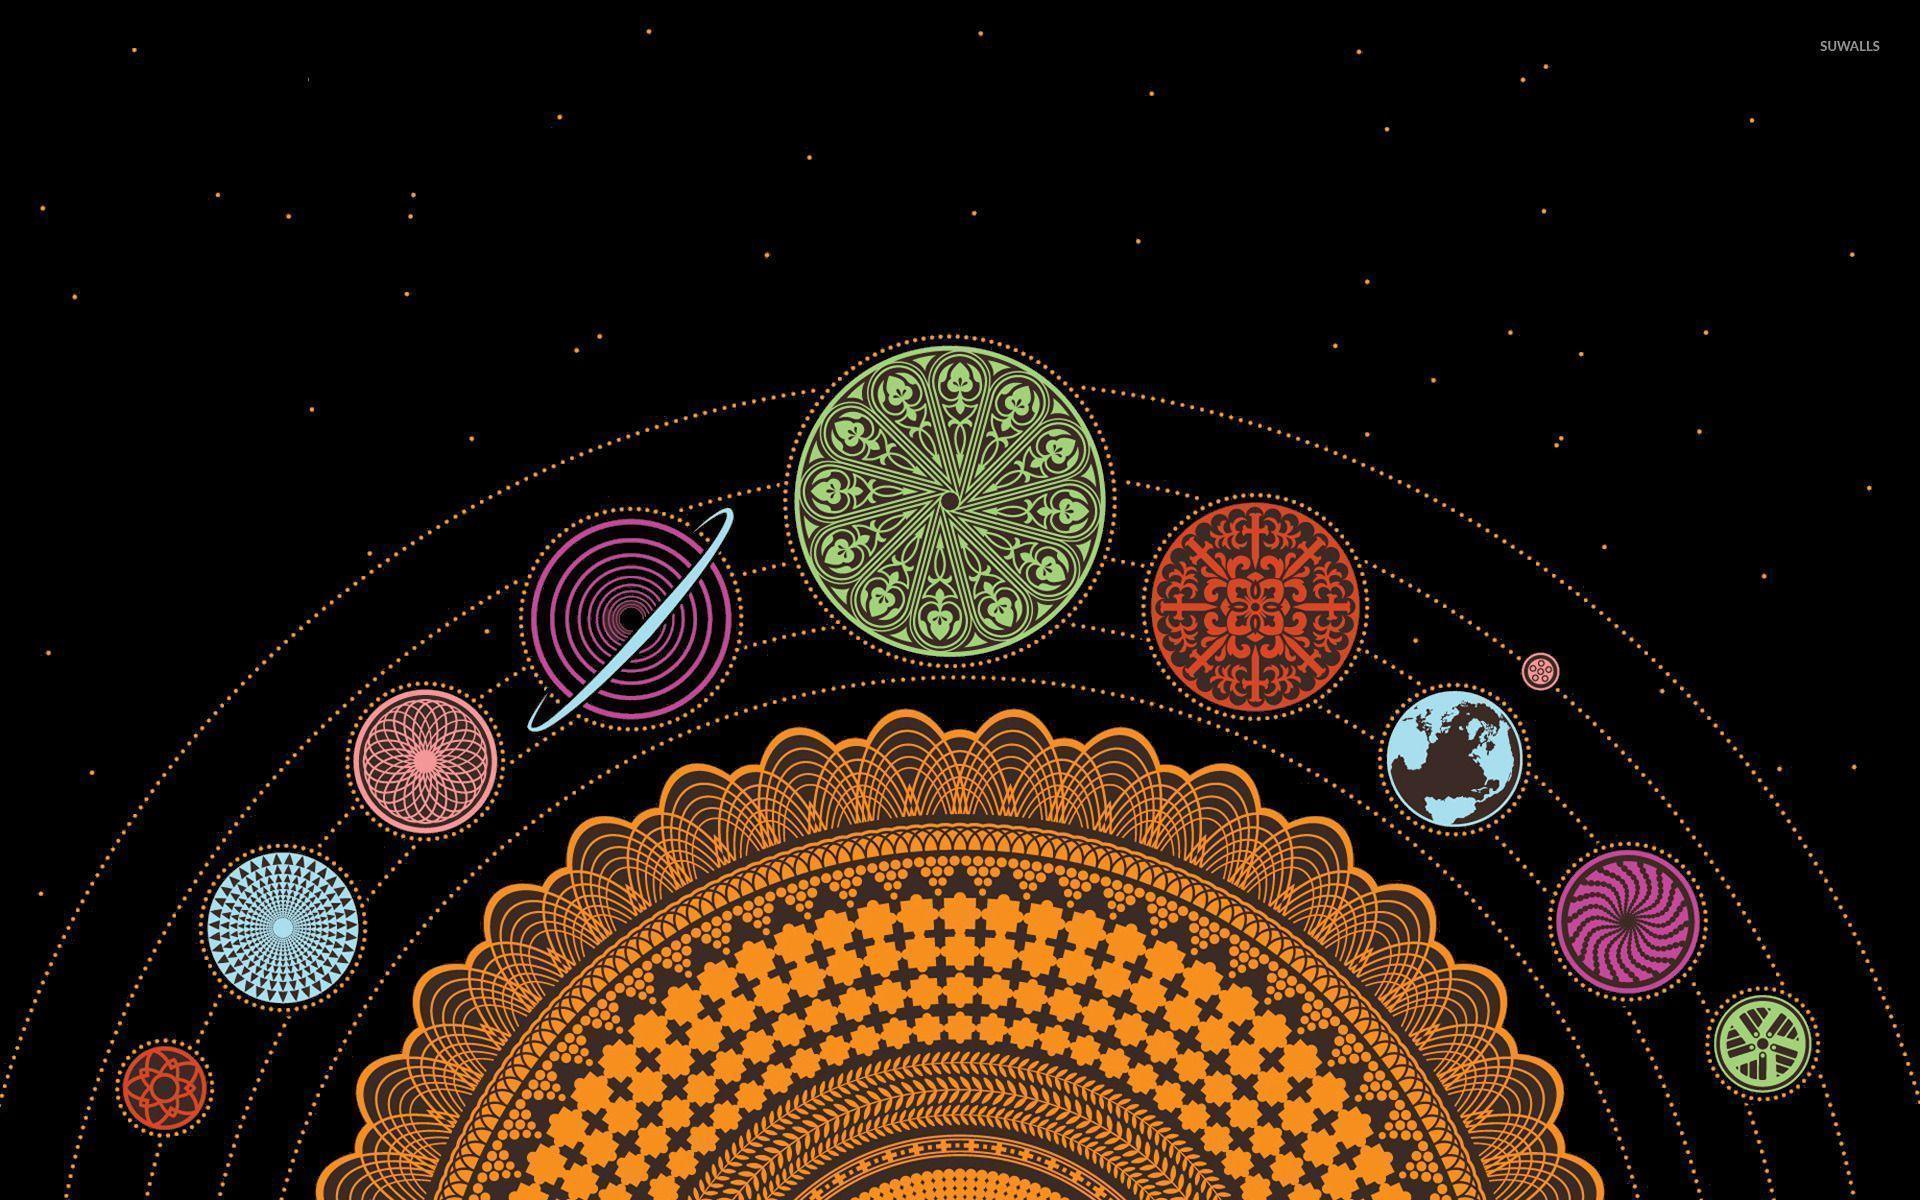 The solar system wallpaper wallpaper